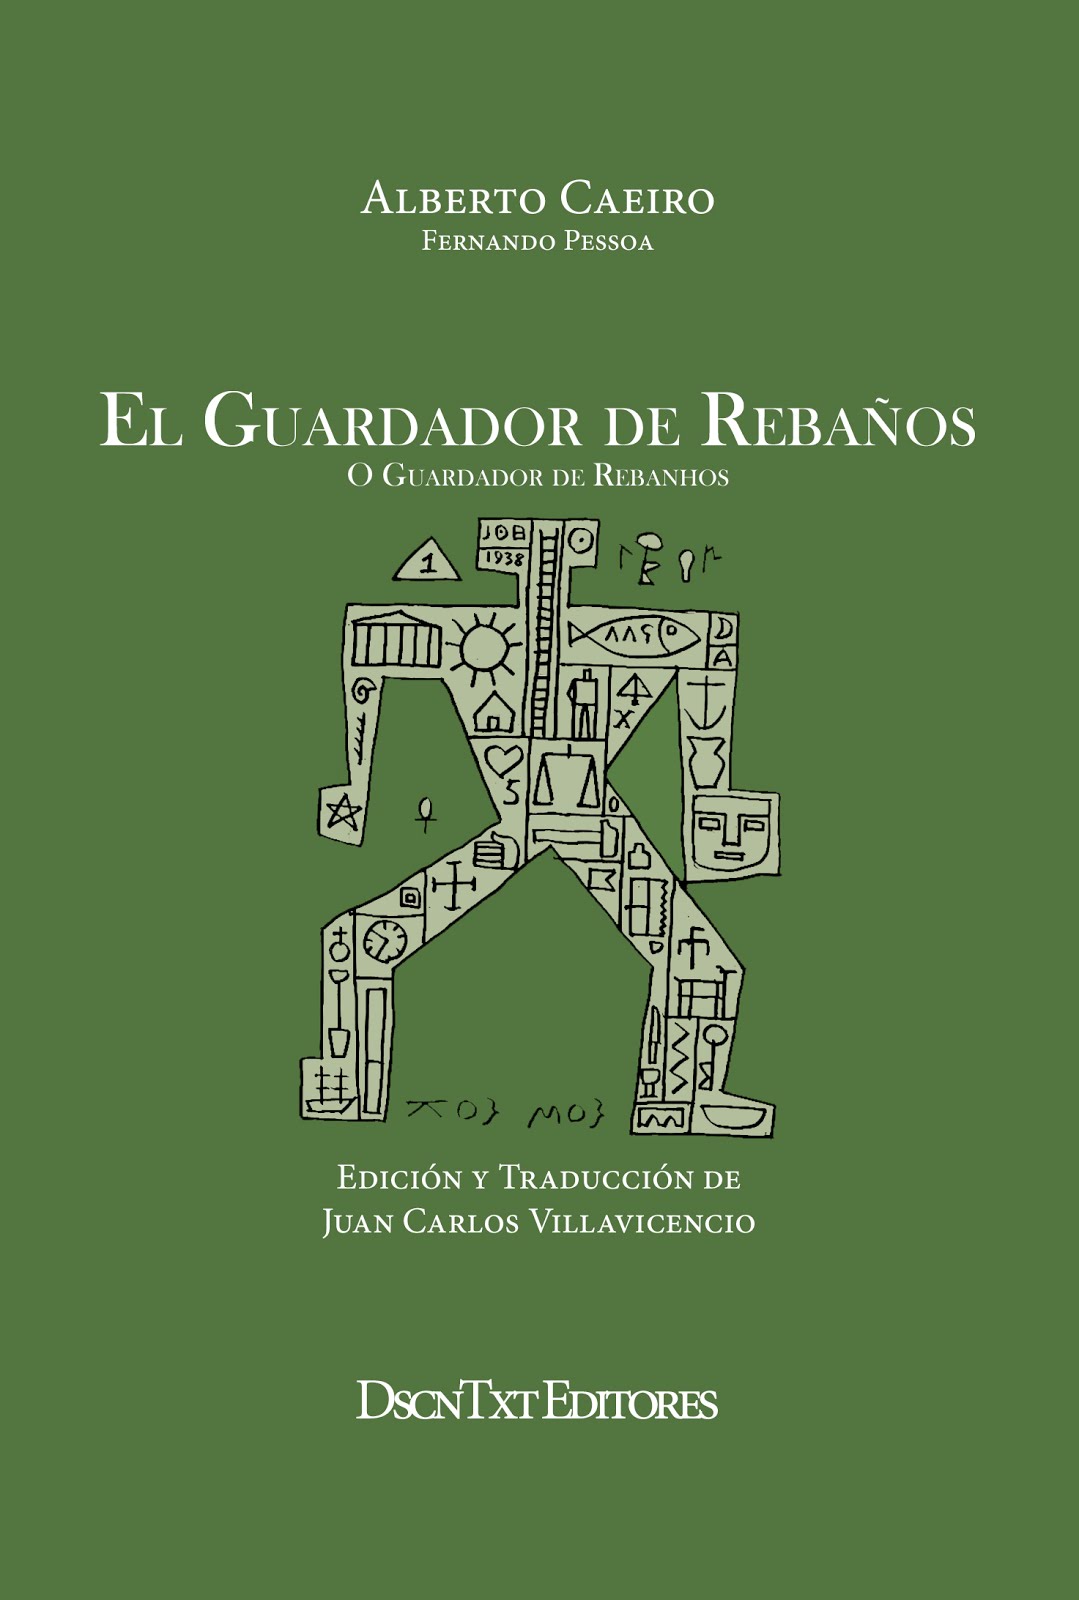 El guardador de rebaños, de Alberto Caeiro (Fernando Pessoa). Edición de Juan Carlos Villavicencio